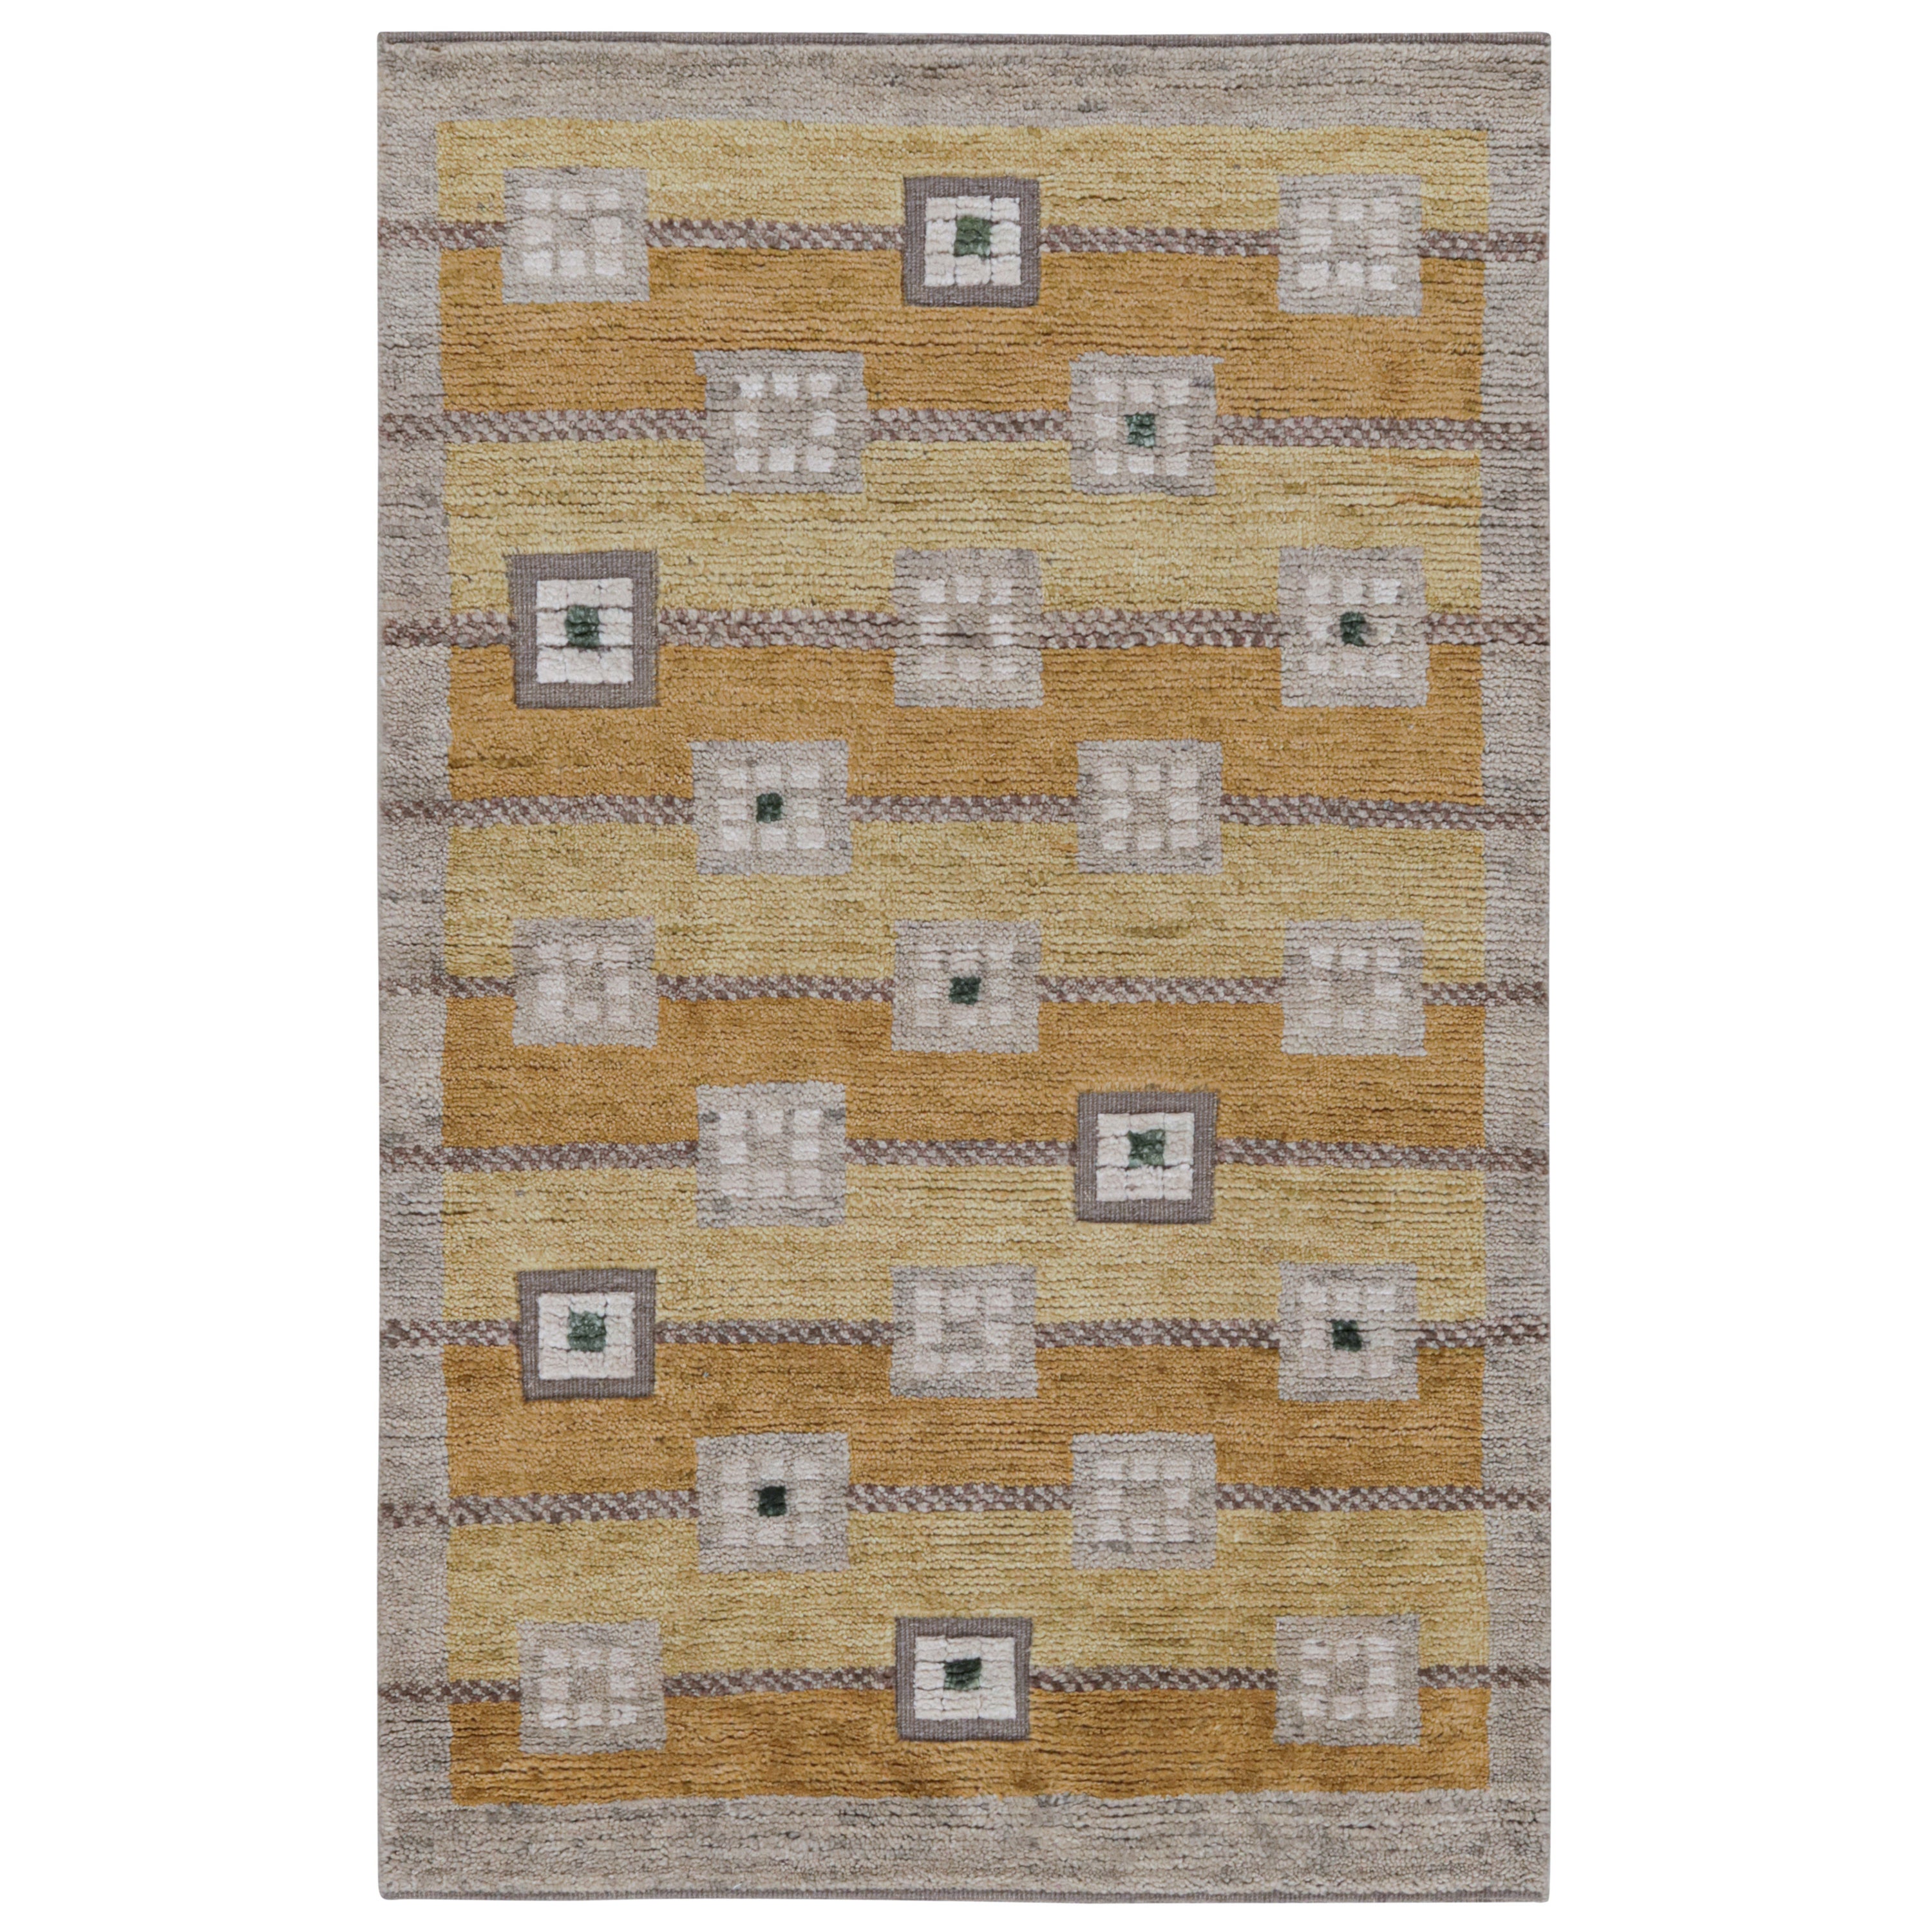 Rug & Kilim's Teppich im skandinavischen Stil mit geometrischen Mustern in Gold, Brown und Grau